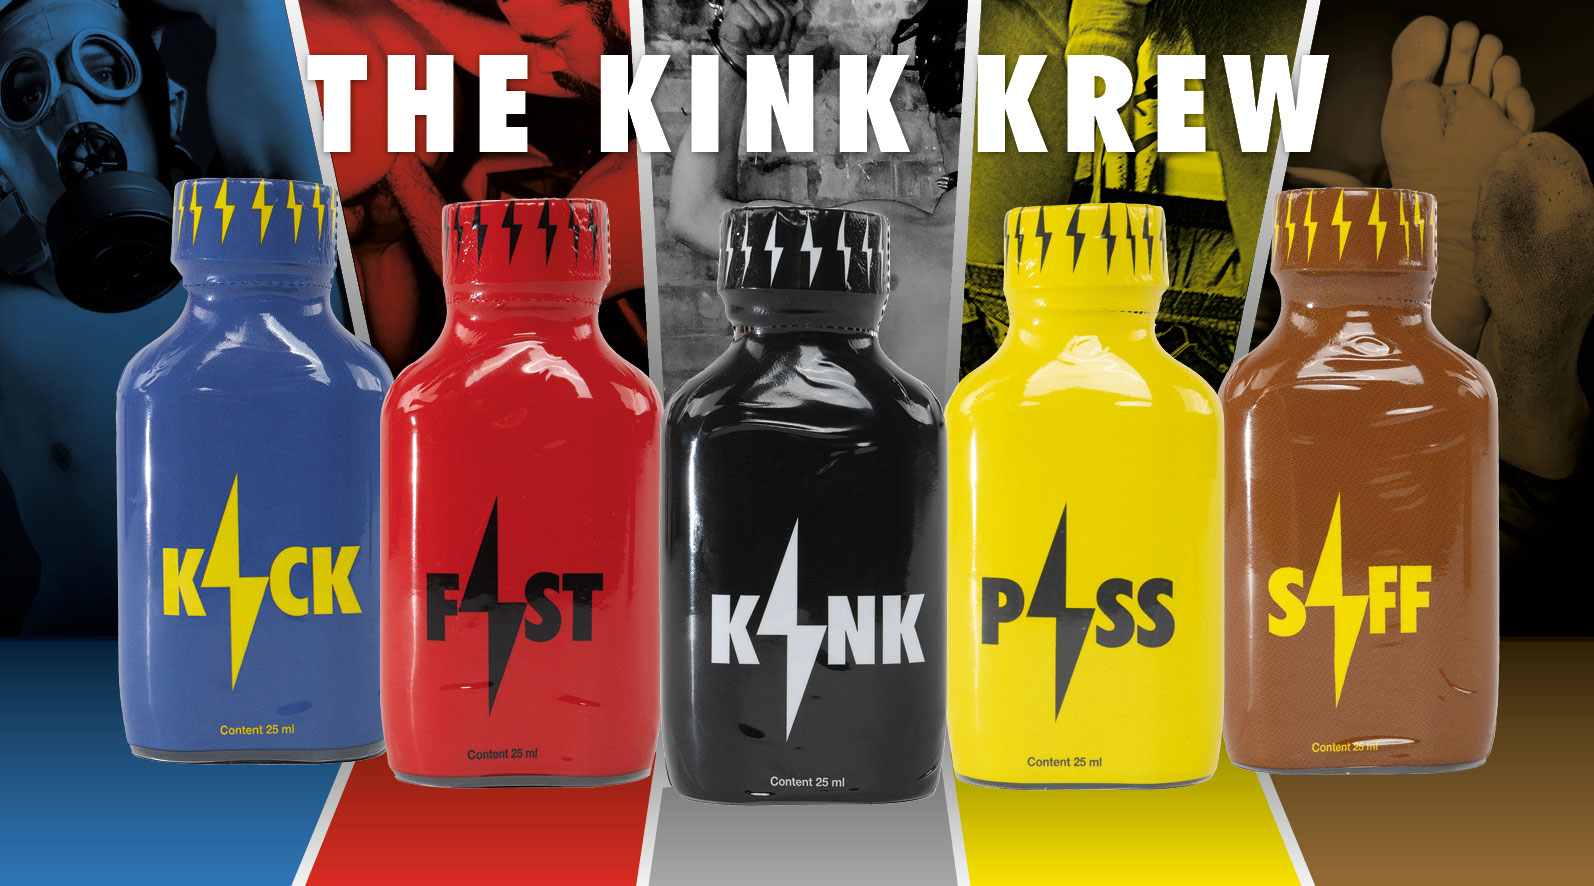 Neue Kink Krew - Fist, Kick, Kink, Piss, Siff